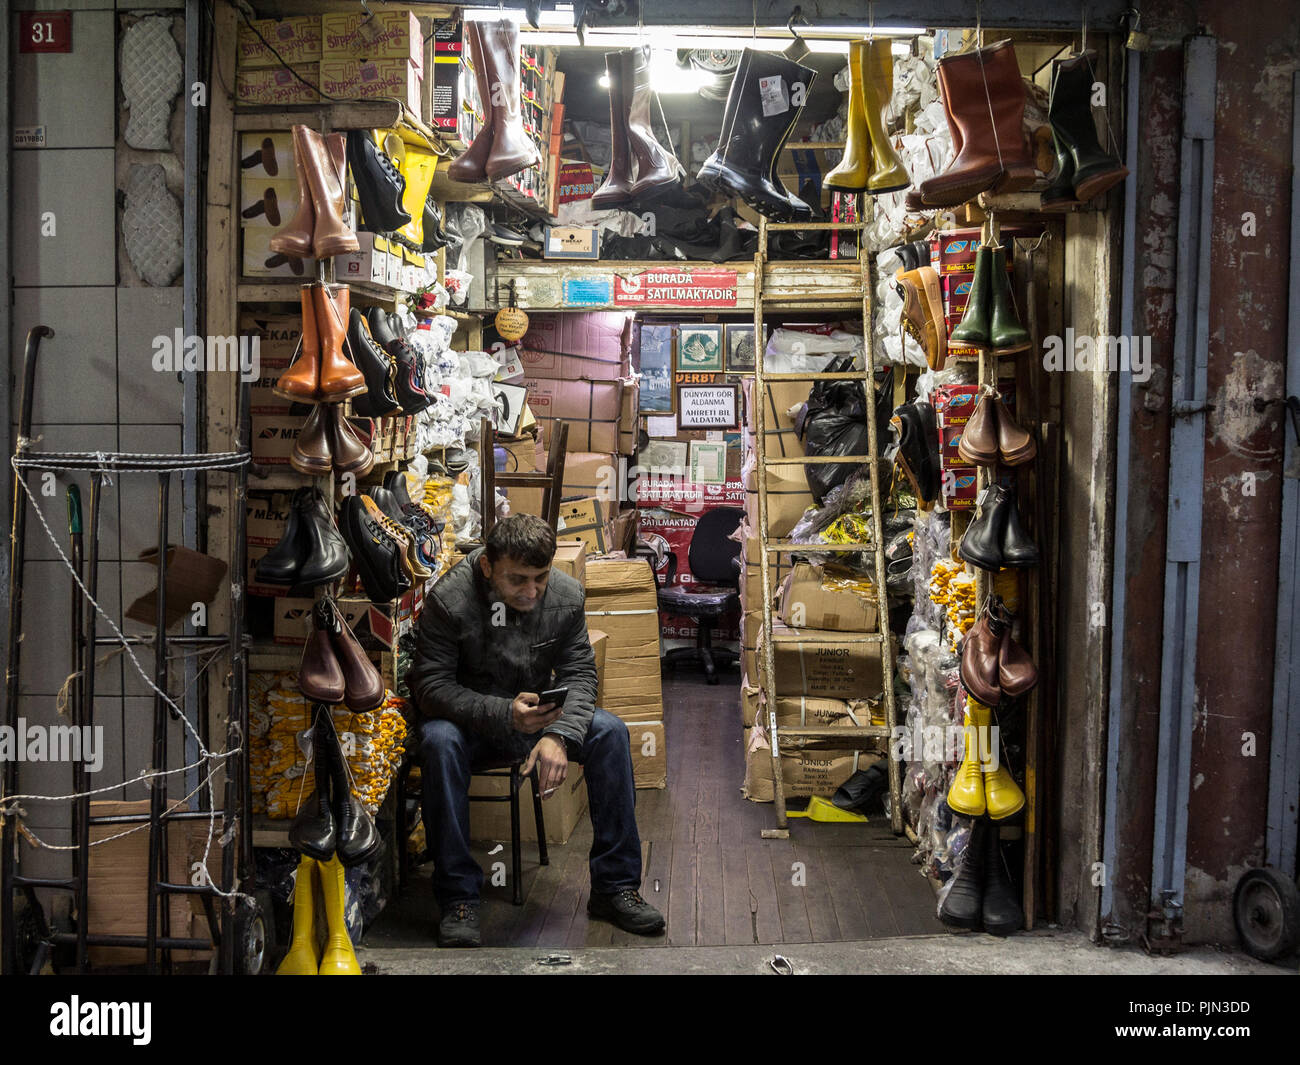 ISTANBUL, Turchia - 29 dicembre 2015: Turco venditore di fumare sigarette davanti al suo negozio vendita di scarpe e stivali, vicino al Bazar delle Spezie, sul Foto Stock